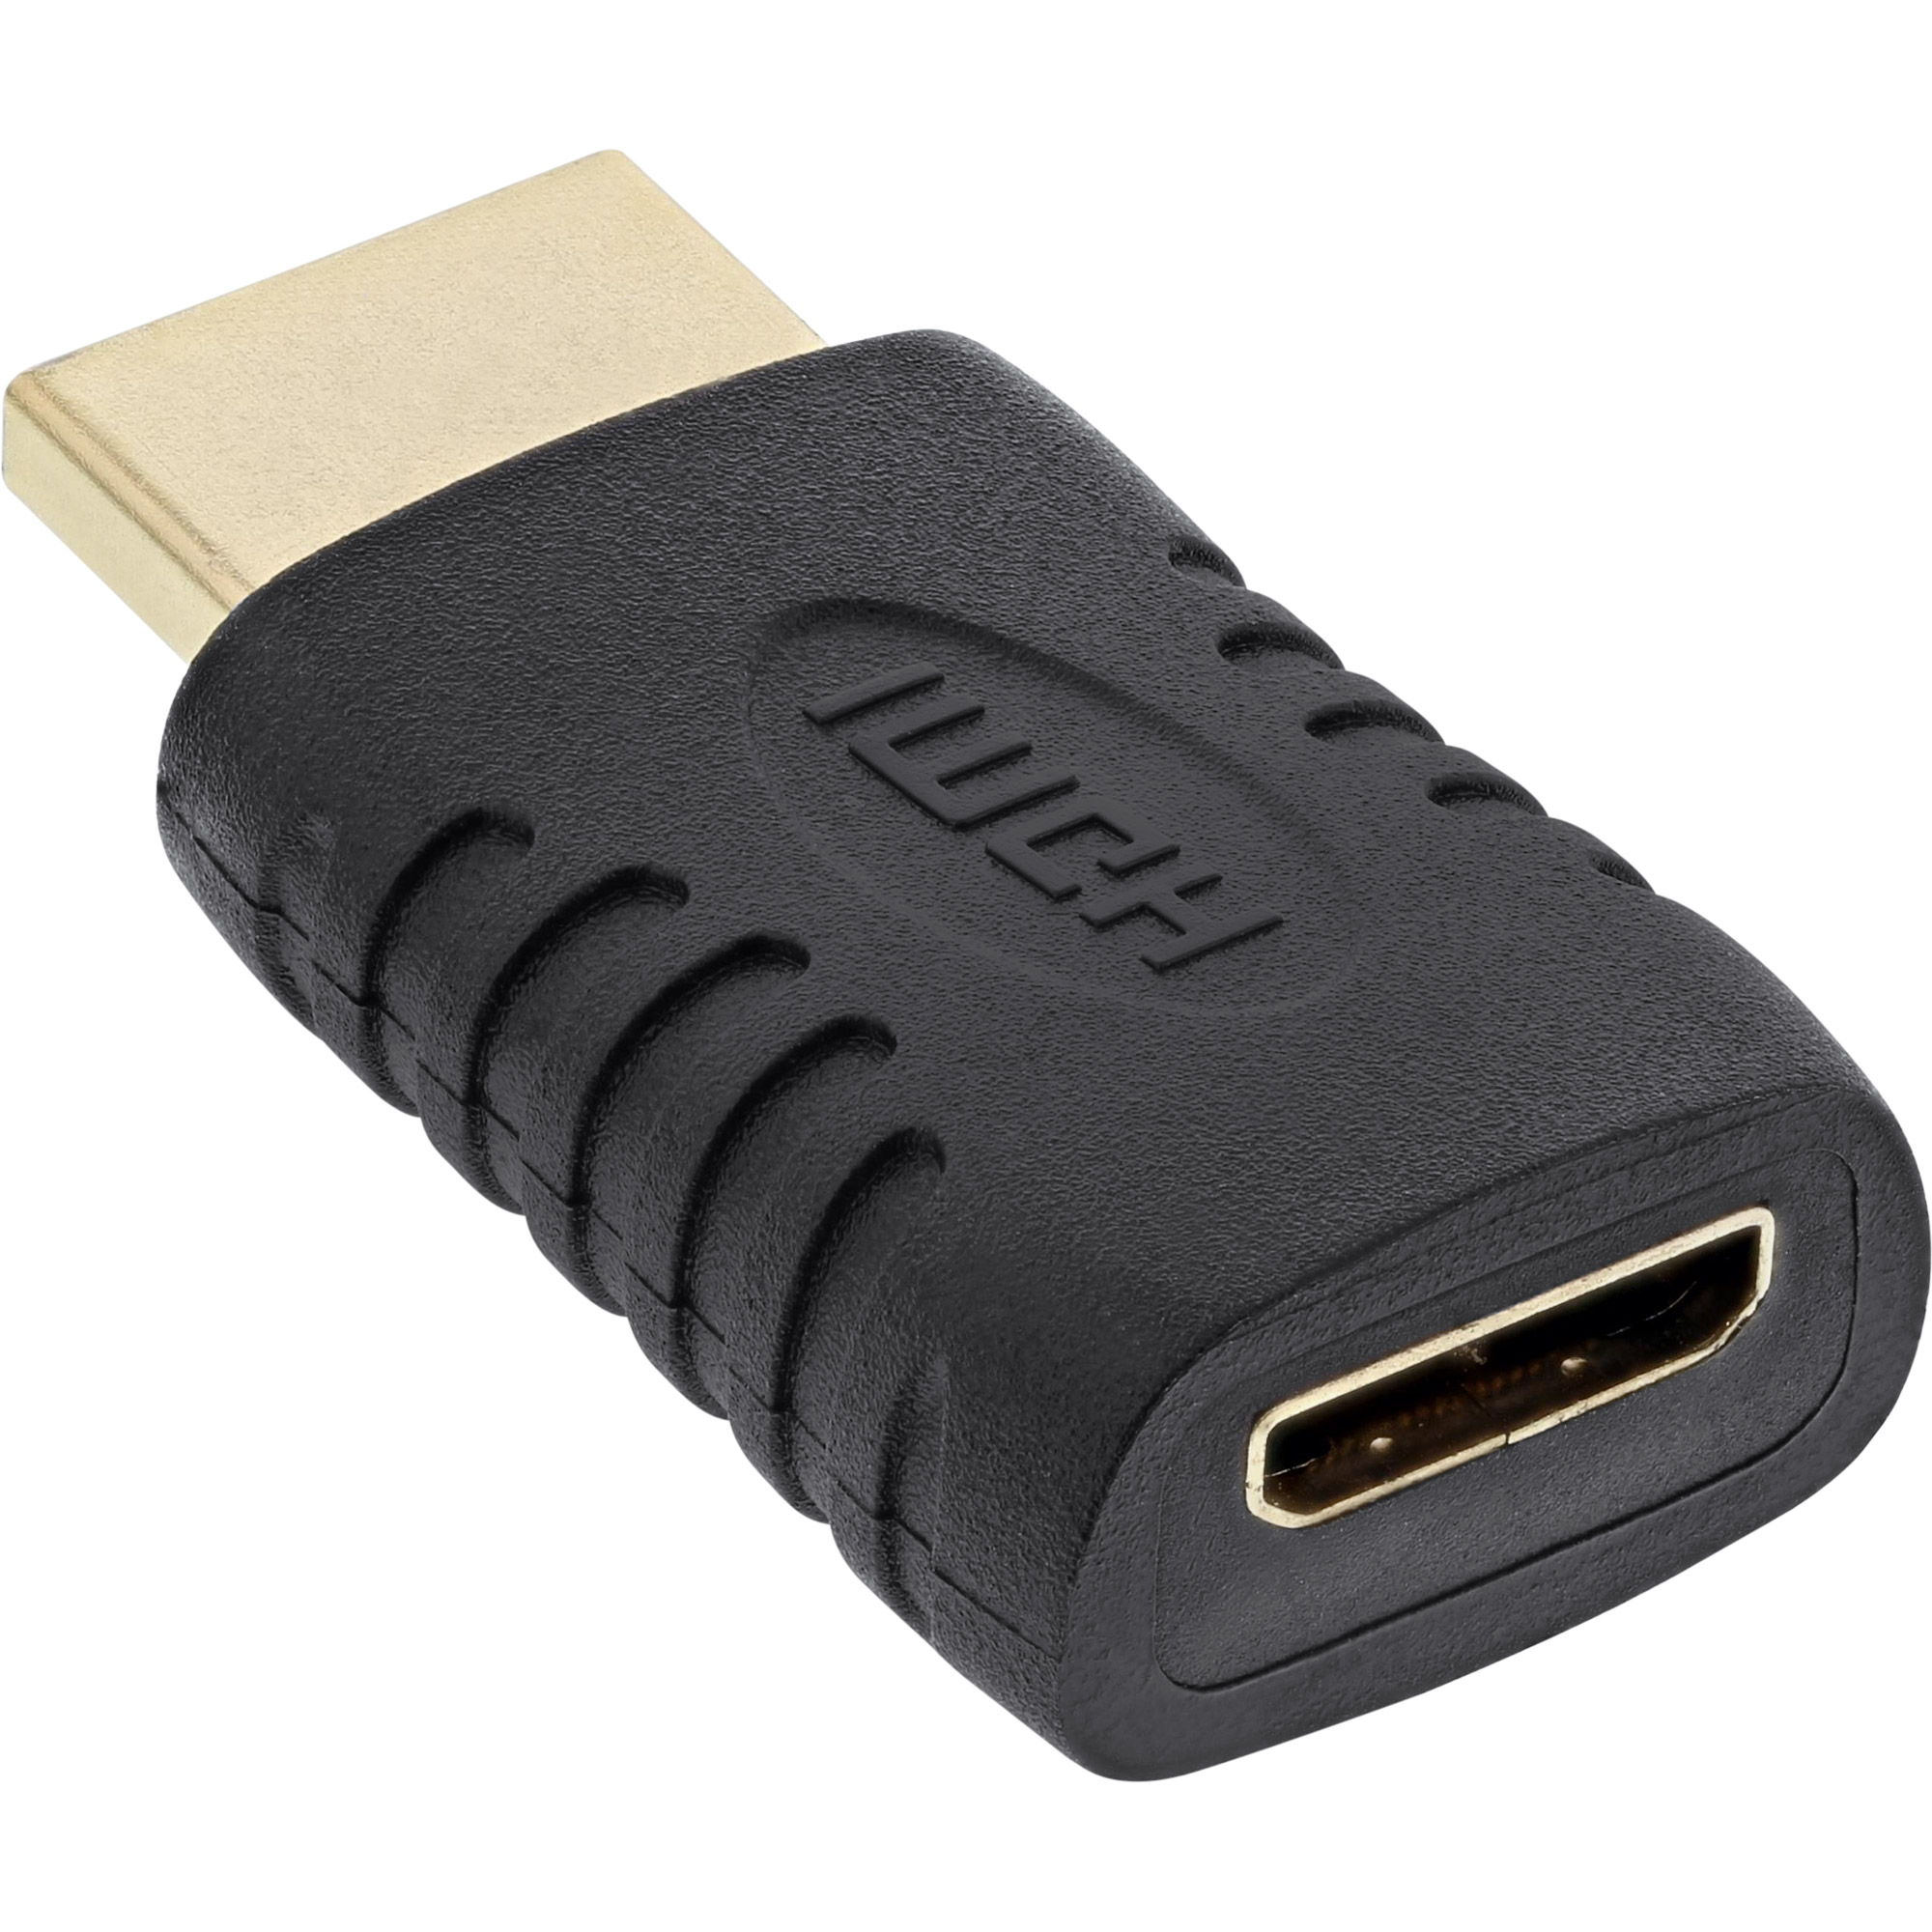 INLINE InLine® HDMI auf Stecker C / Buchse, HDMI mini zu / A 4K2K / HDMI Adapter, HDMI Mini DVI kompatibel